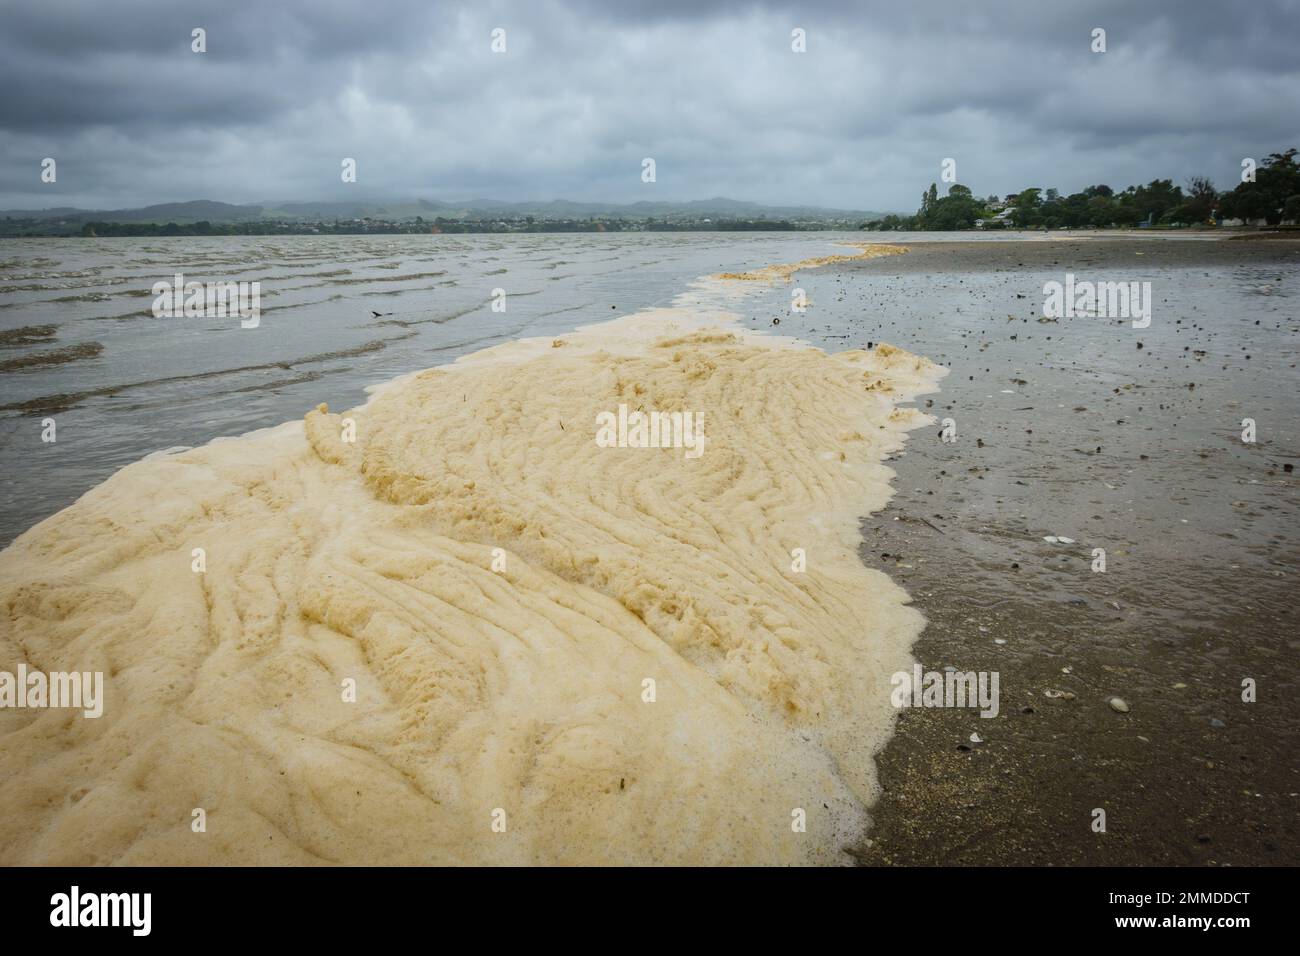 Drainage sludge washed onto beaches after storm, Tauranga New Zealand. Stock Photo